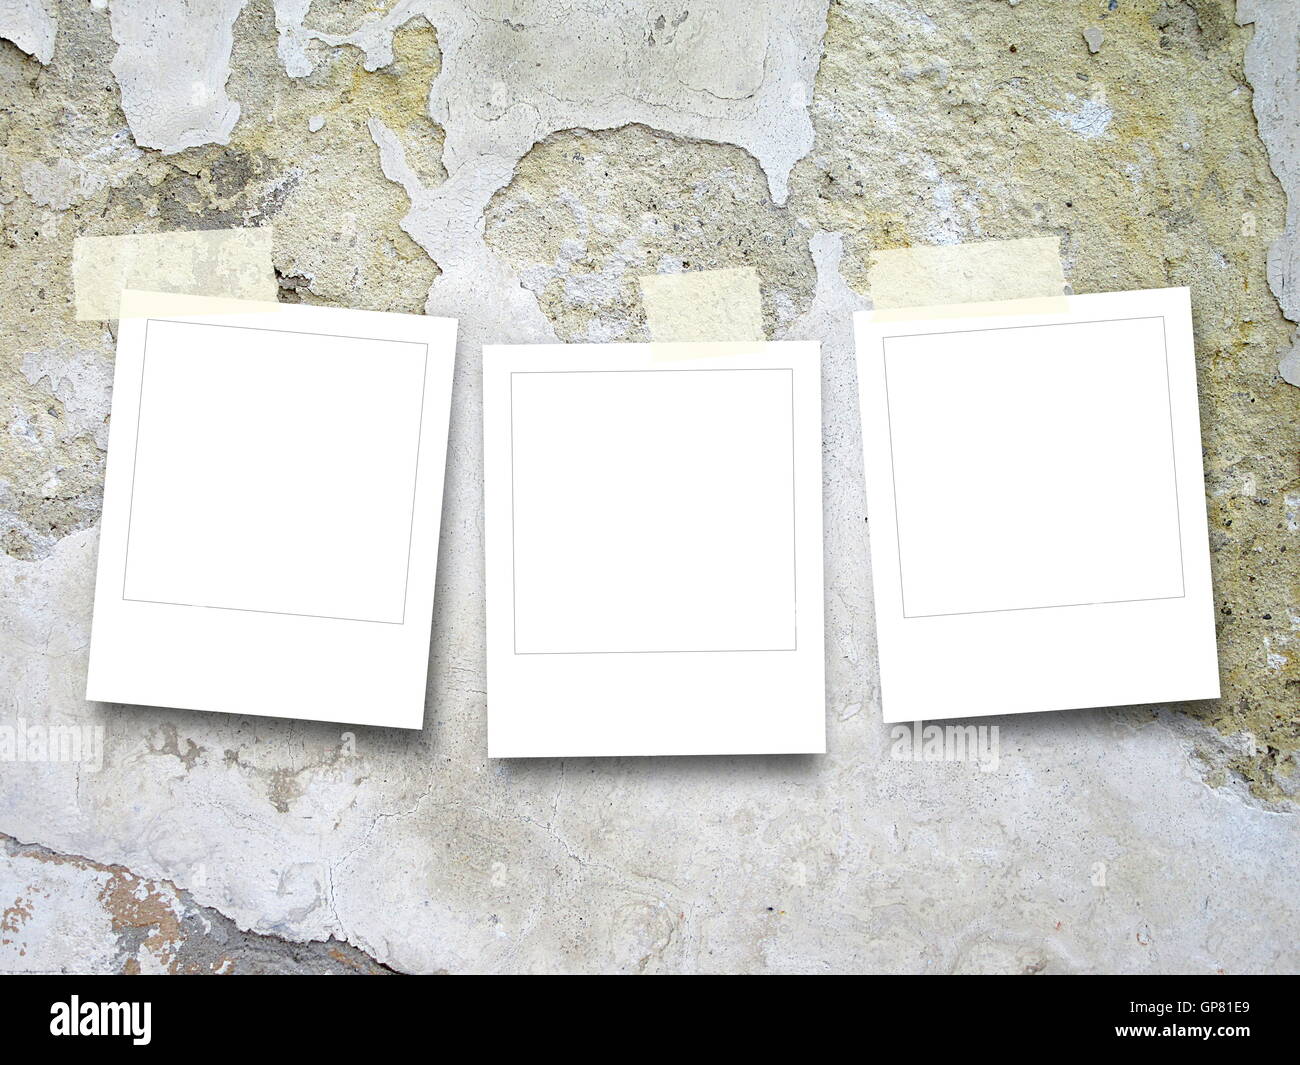 Close-up de trois carrés cadres photo instantanée vide avec du ruban adhésif sur mur de béton fissuré et rayé background Banque D'Images